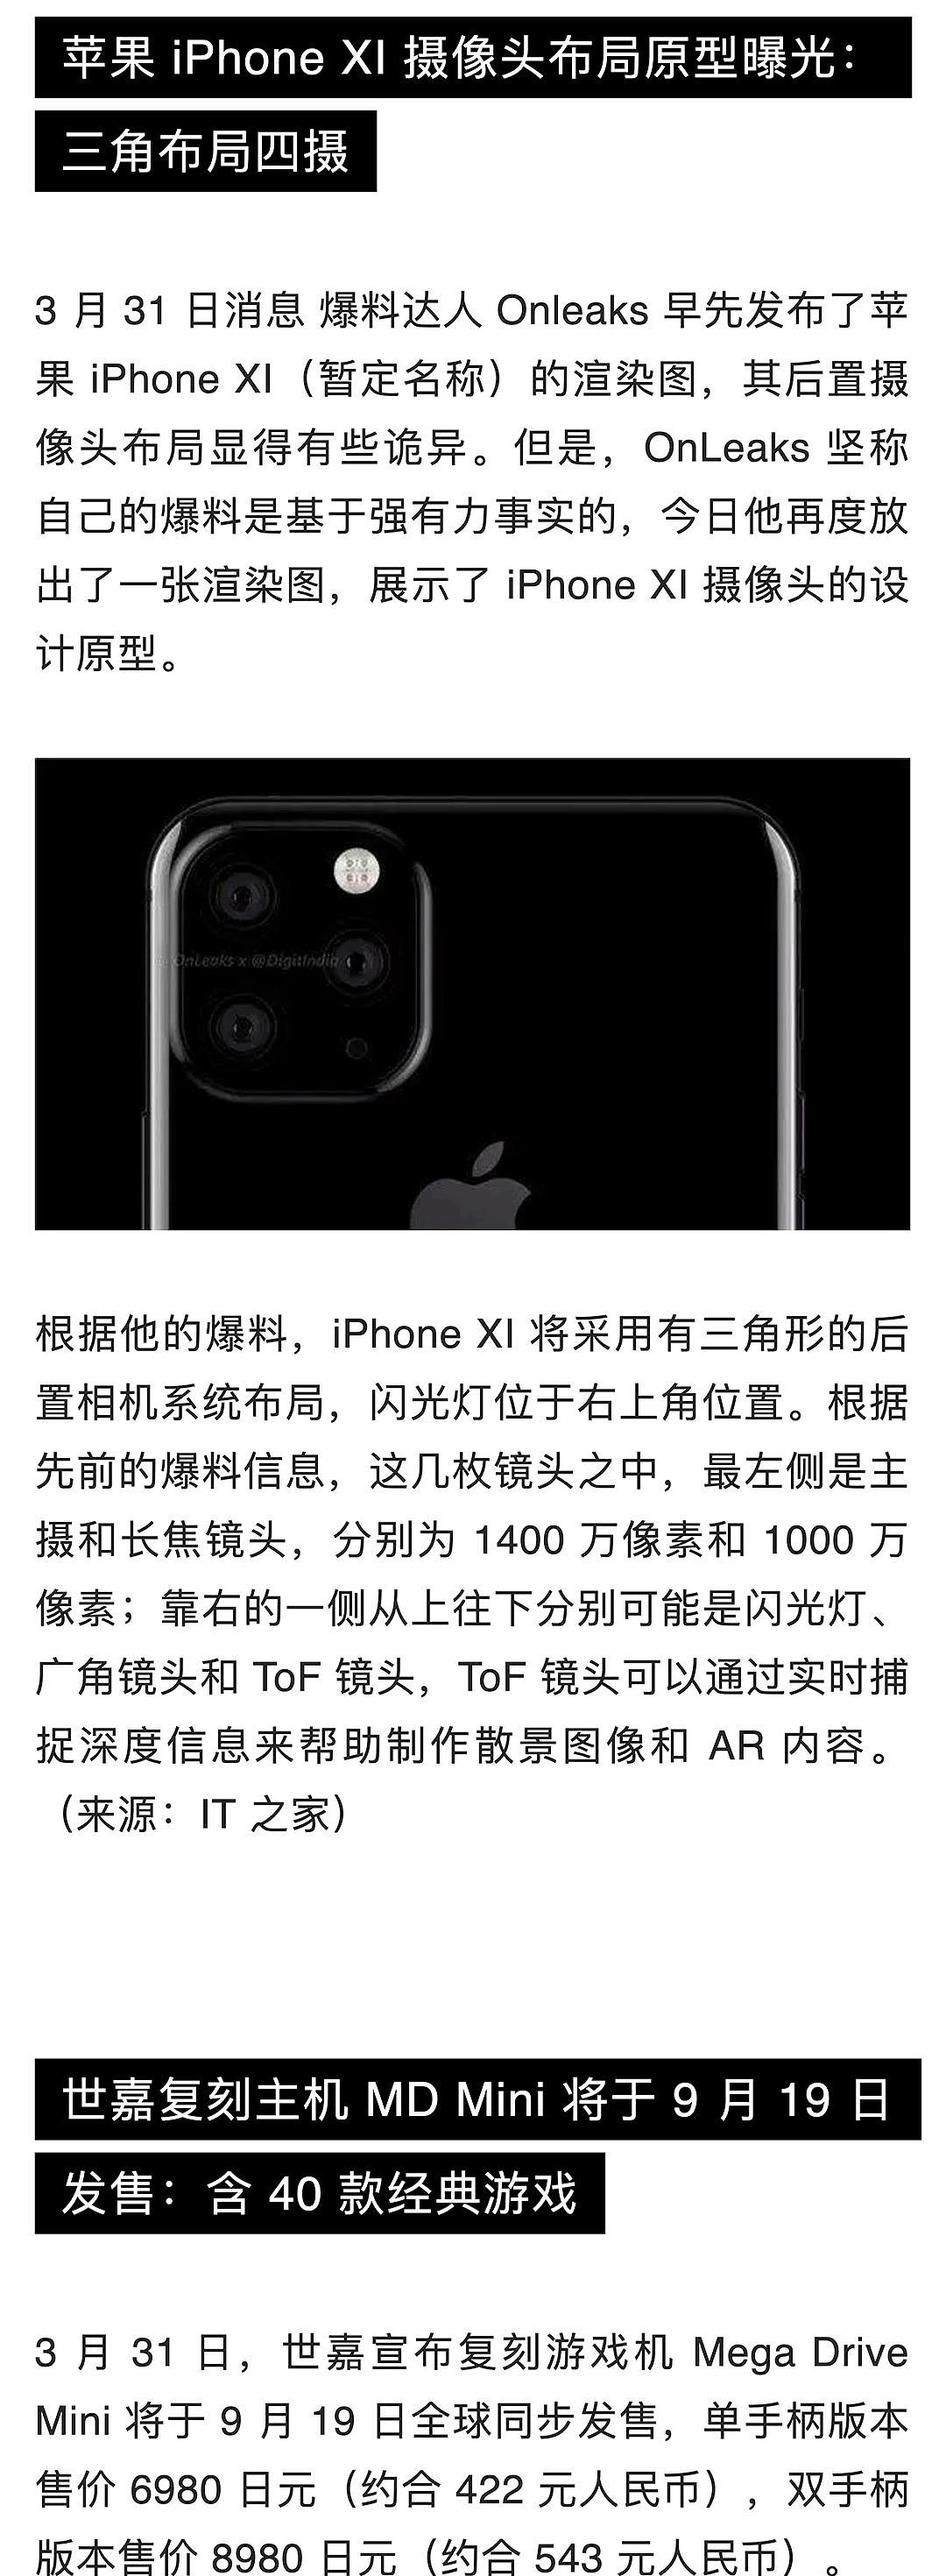 苹果中国全线降价约 3%；熊猫直播宣布正式关闭；苹果挖角特斯拉工程副总裁 | 极客早知道 - 8